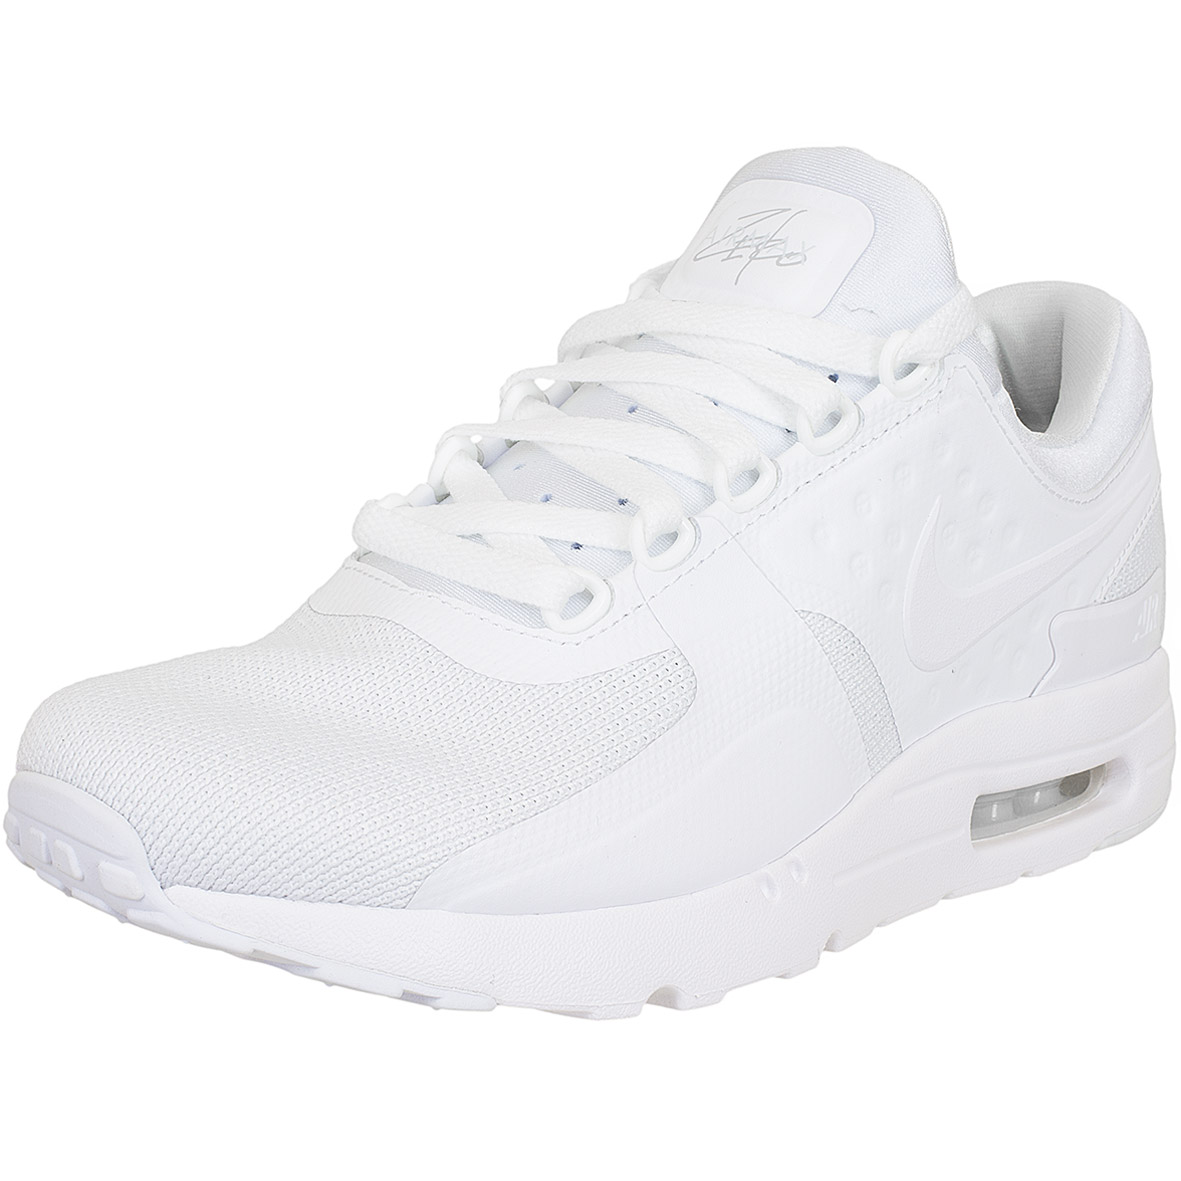 ☆ Nike Sneaker Air Max Zero Essential weiß/weiß - hier bestellen!